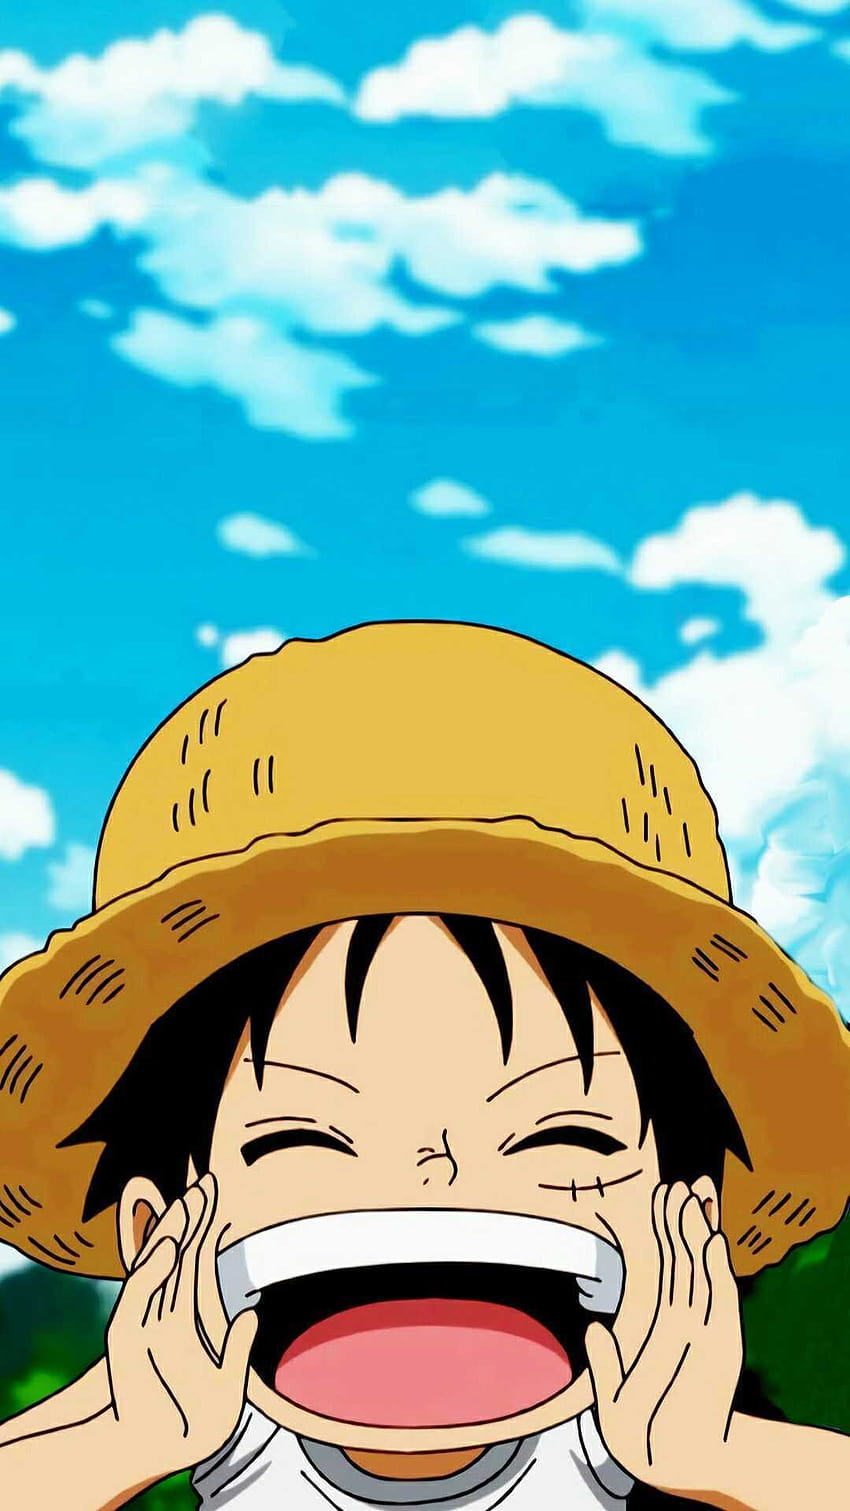 Luffy luôn là nhân vật được yêu thích nhất của anime One Piece. Nếu bạn muốn có một hình nền điện thoại đẹp và ấn tượng về Luffy, hãy thử tìm kiếm các bức ảnh HD chất lượng cao về anh chàng này. Bạn sẽ không thể rời mắt khỏi chúng đâu!